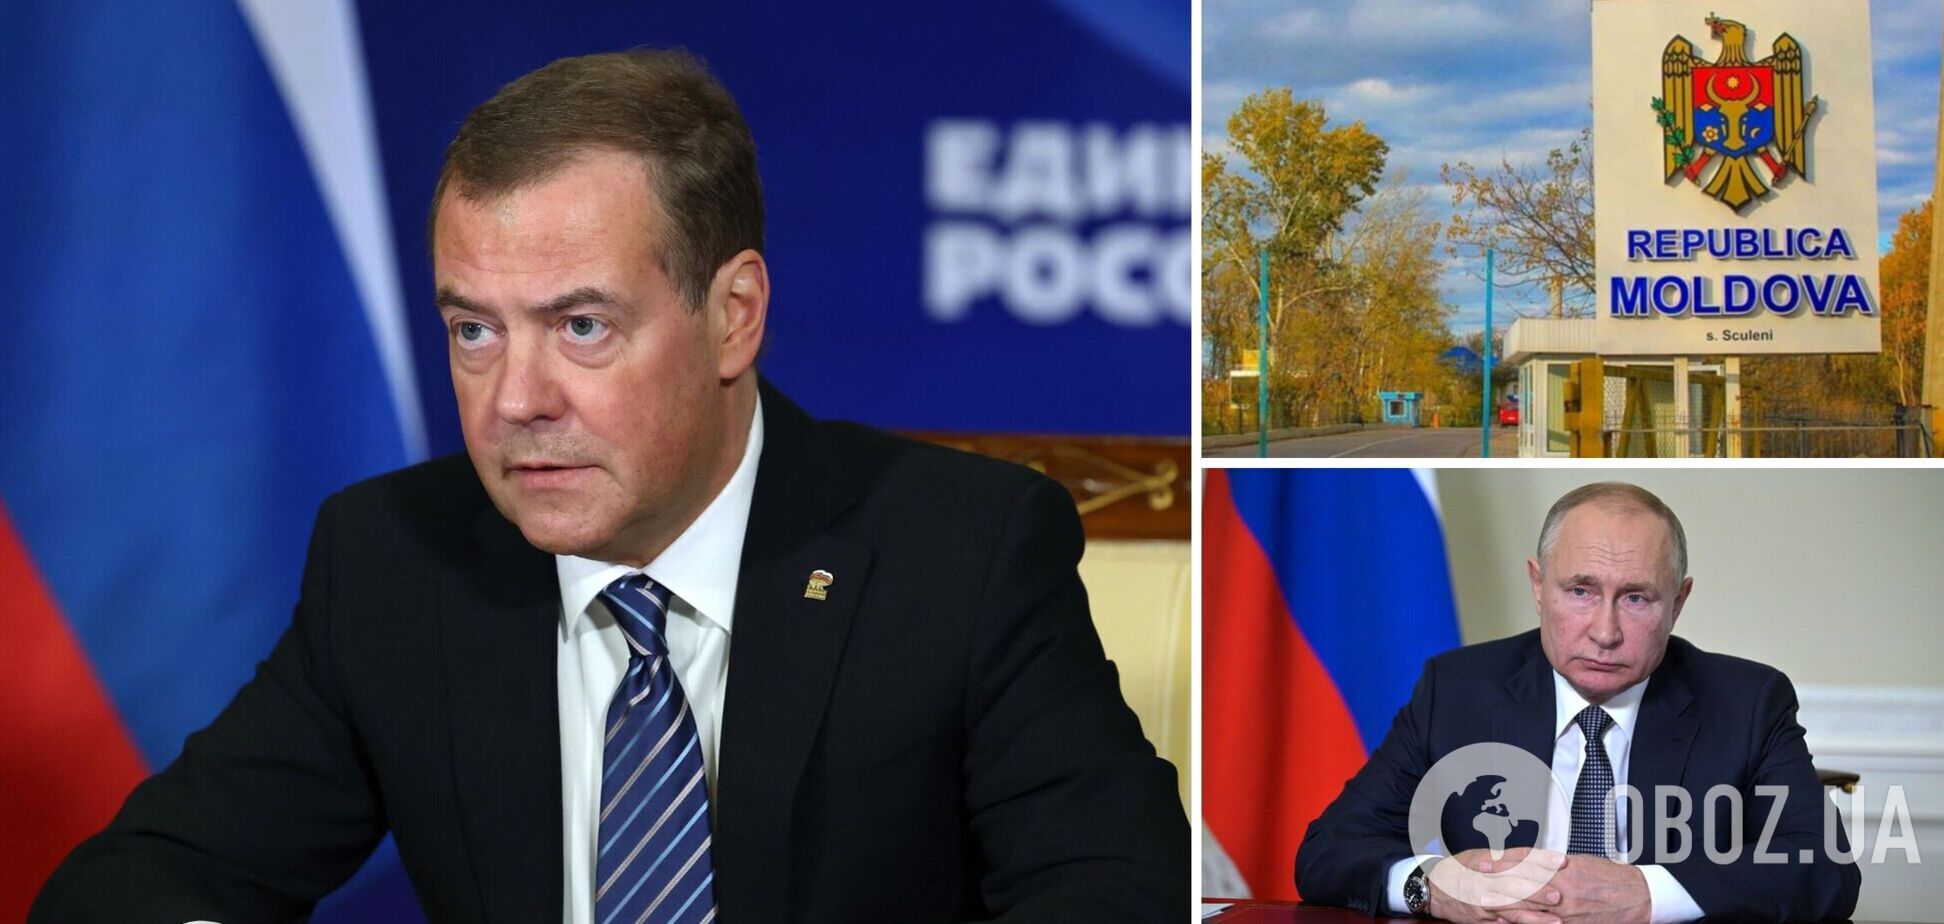 'Такої країни вже немає': Медведєв влаштував істерику через заяву Молдови щодо Путіна